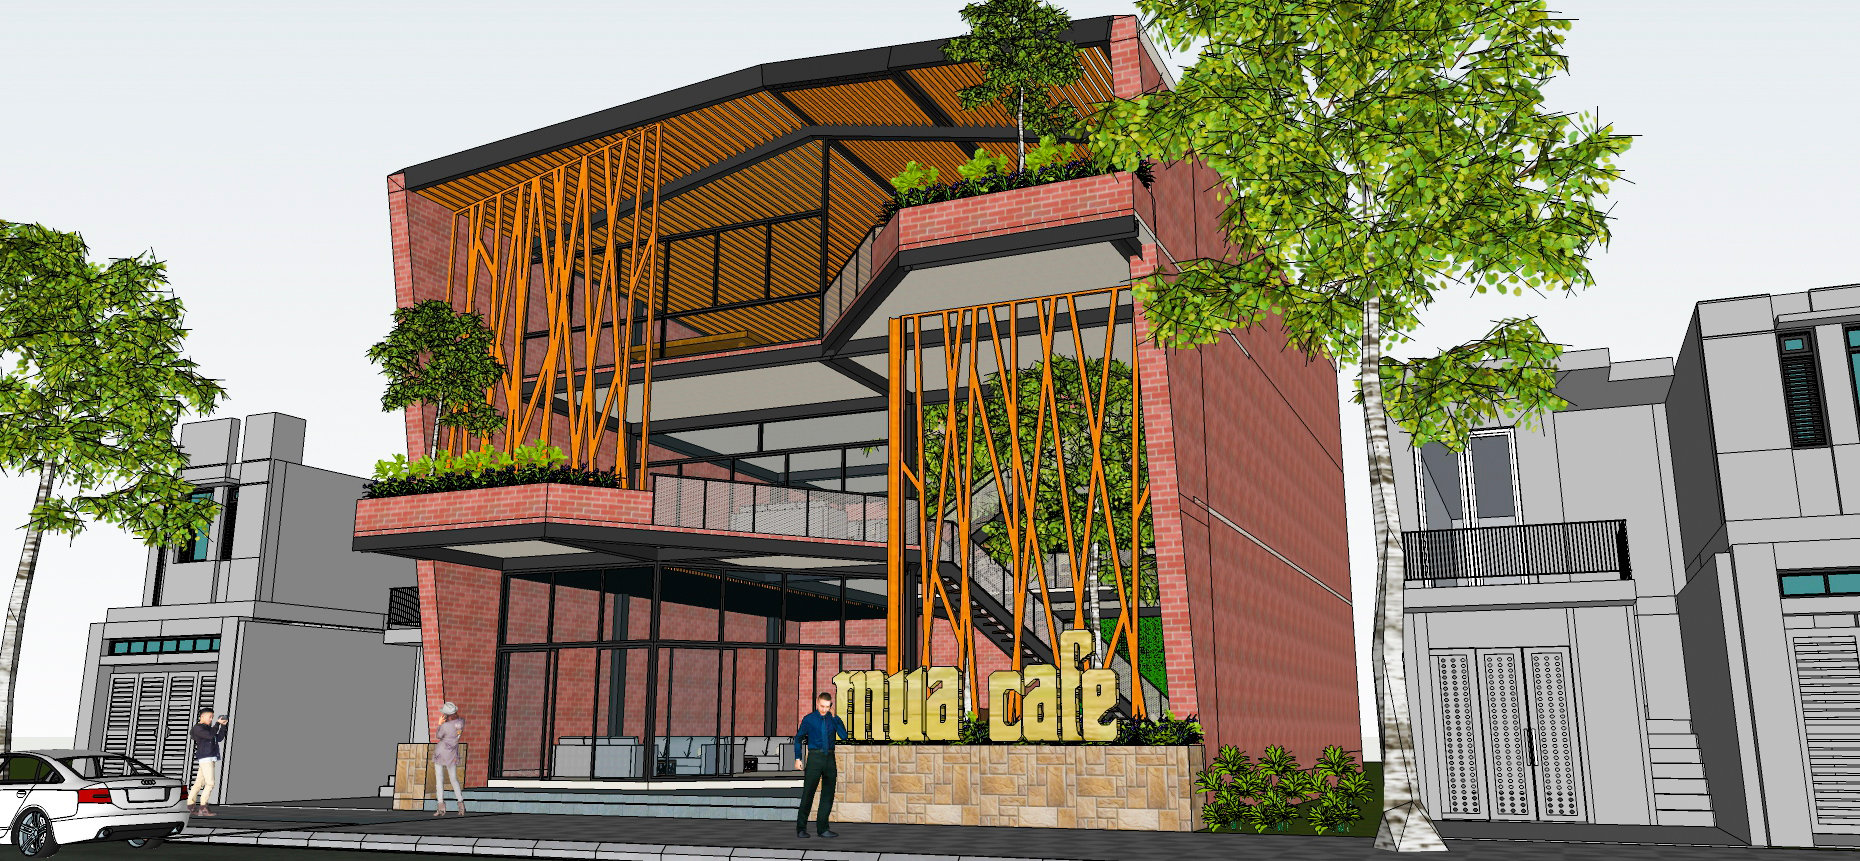 thiết kế nội thất Cafe tại Hà Tĩnh Dự Án Cafe Bằng kết cấu thép 2 1560260328